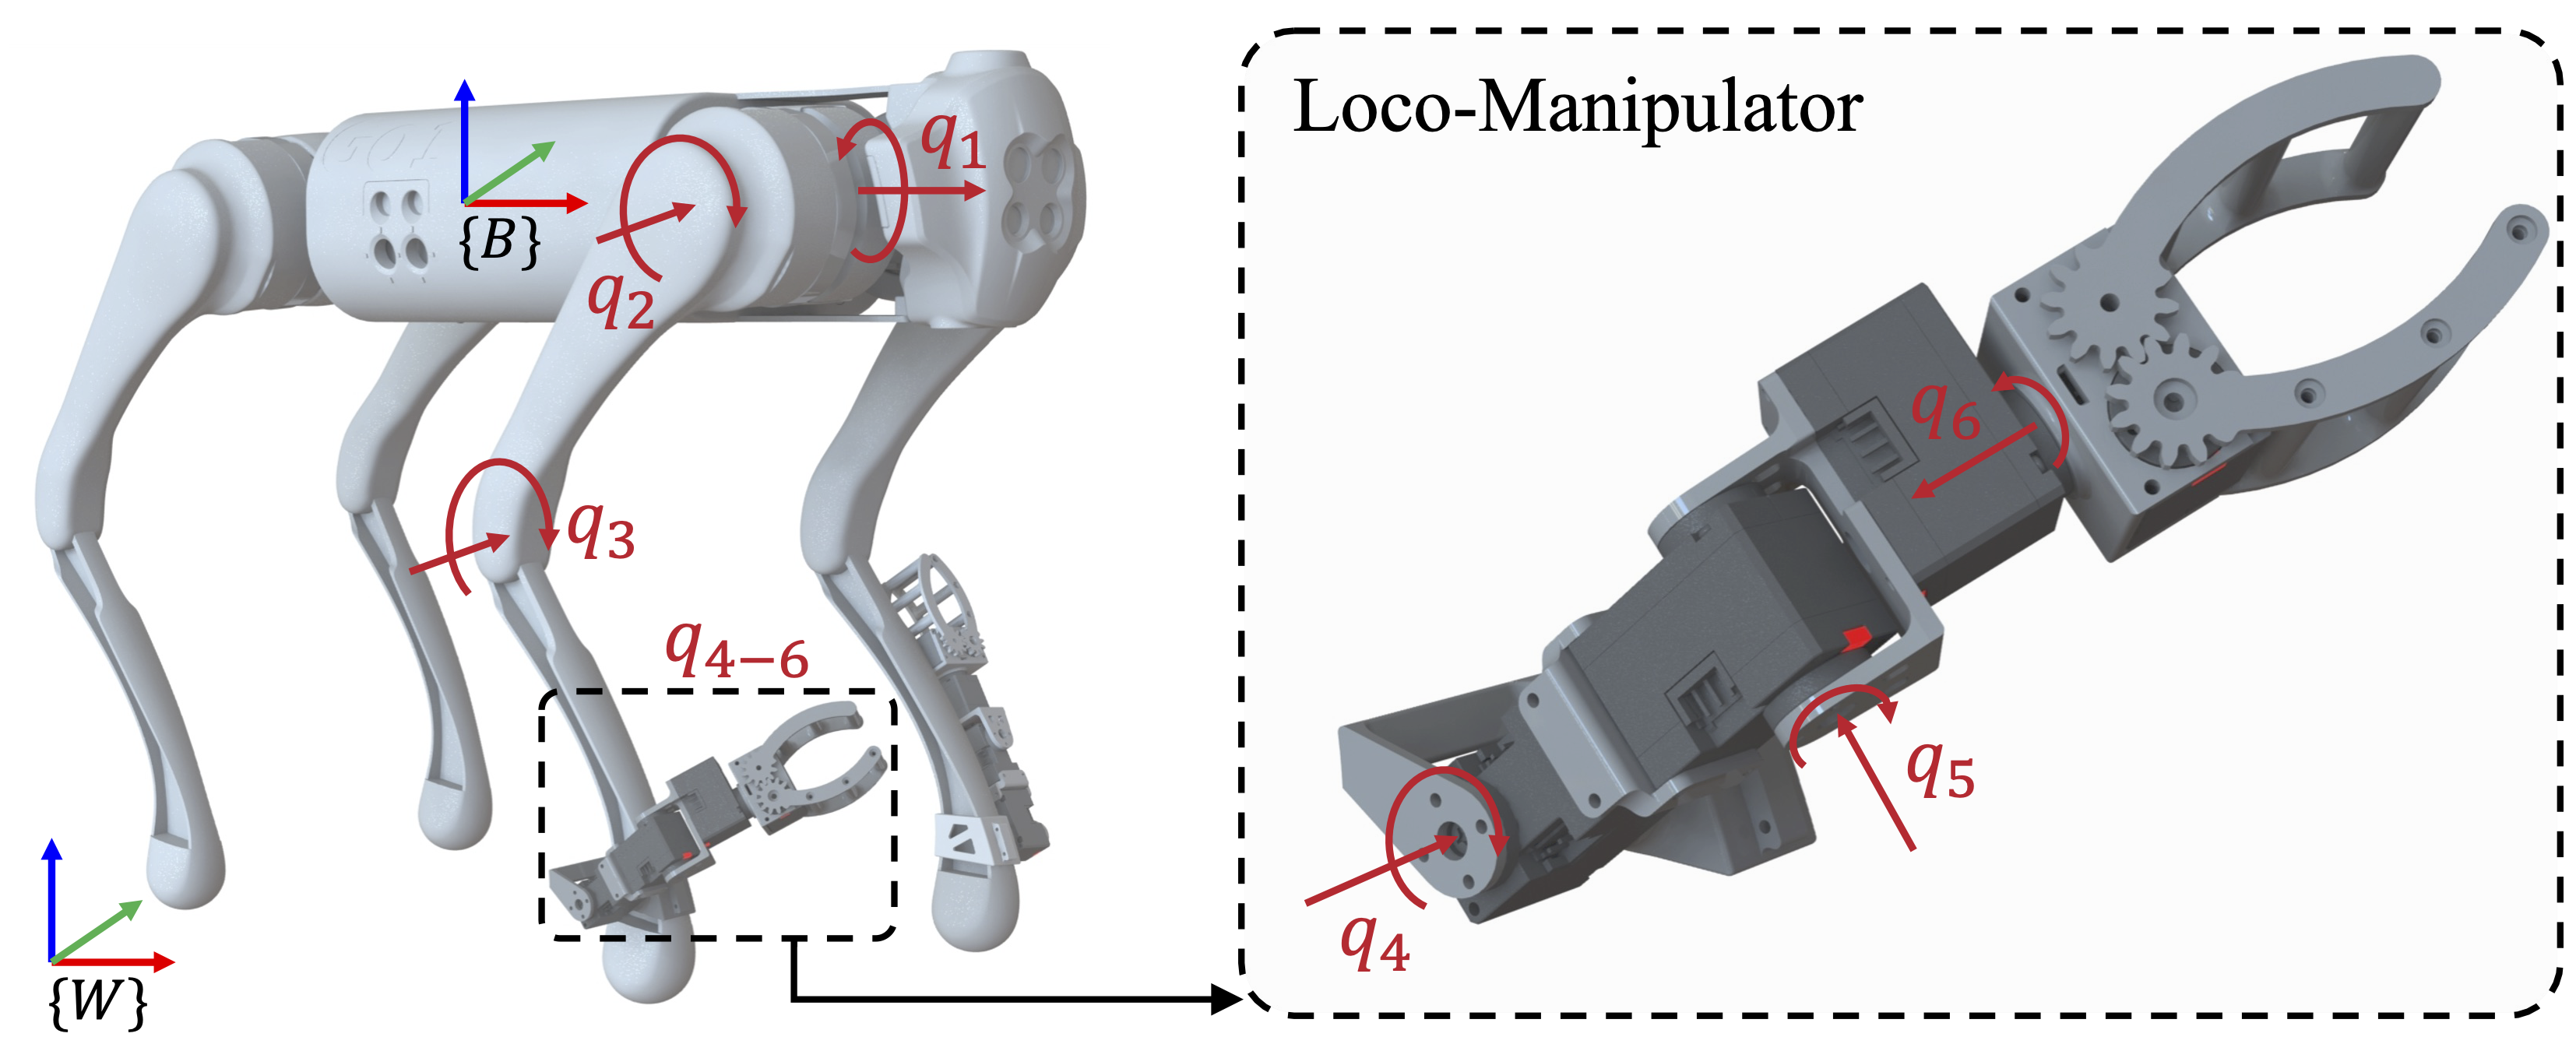 Design of Loco-Manipulator